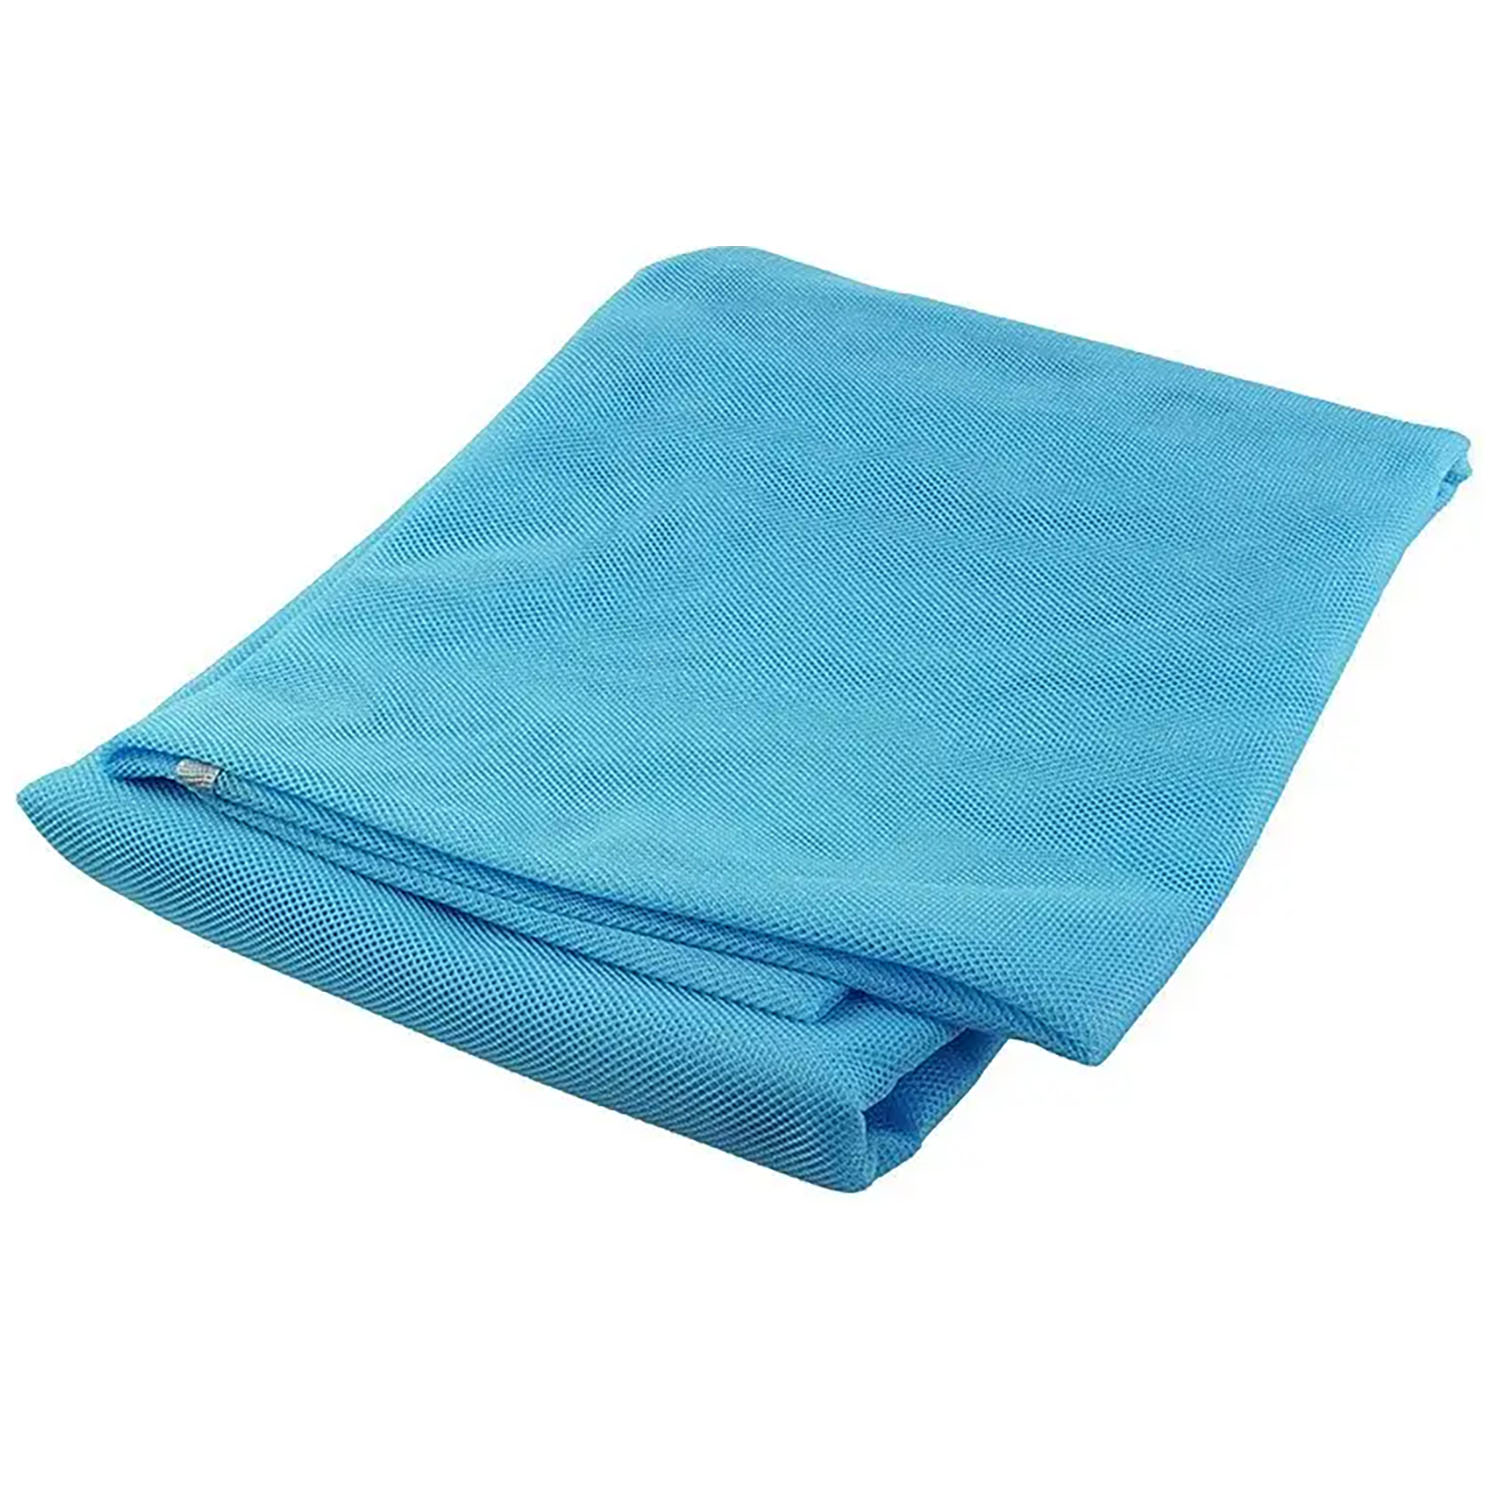 Пляжный коврик Supretto Антипесок 200 х 150 см голубой (55320002) - фото 1